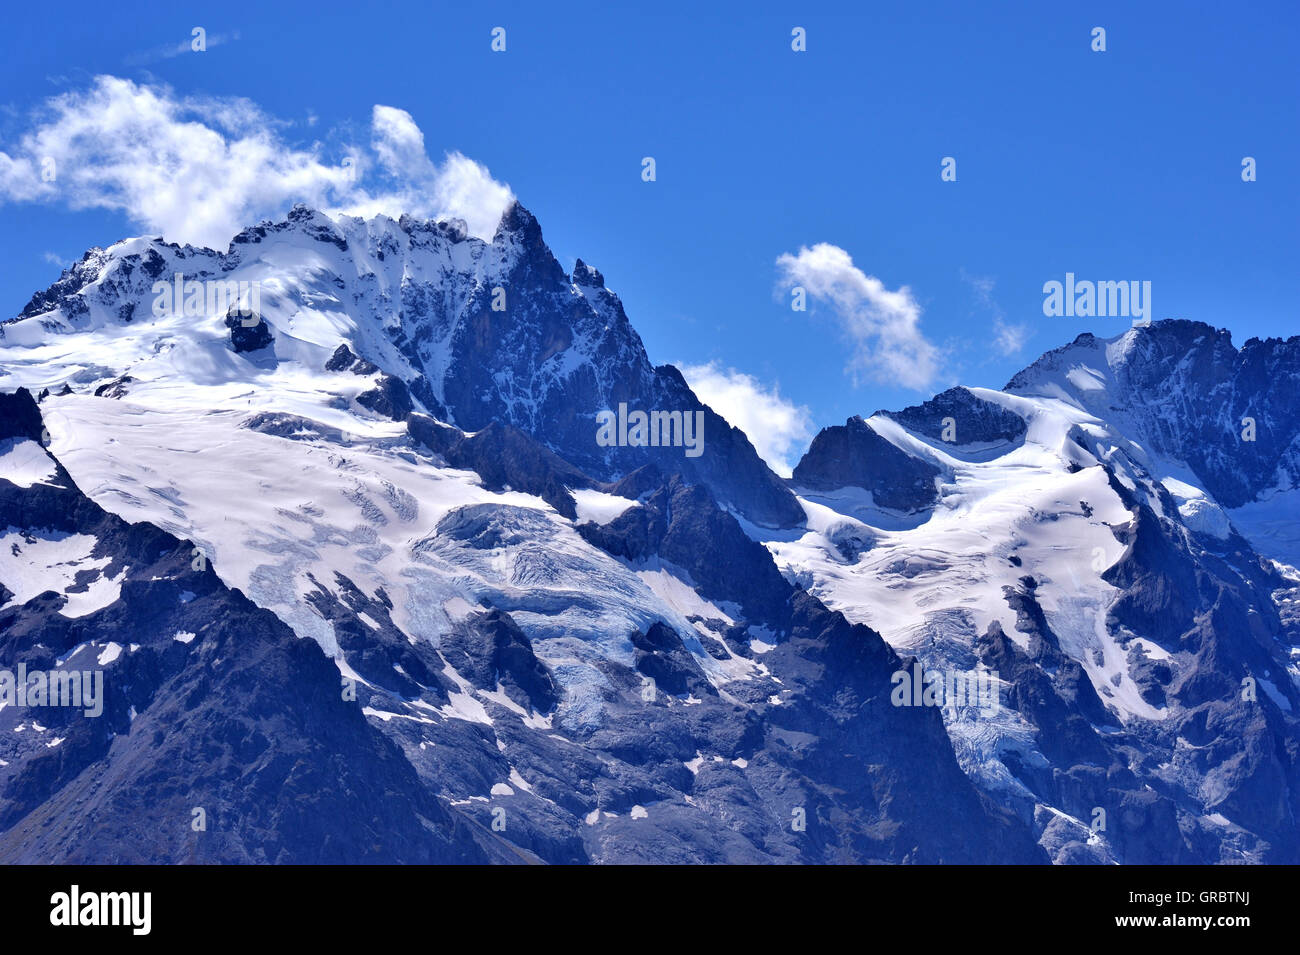 Traumhafte Berggipfel mit Schnee und Eis, Französische Alpen, Frankreich Stockfoto